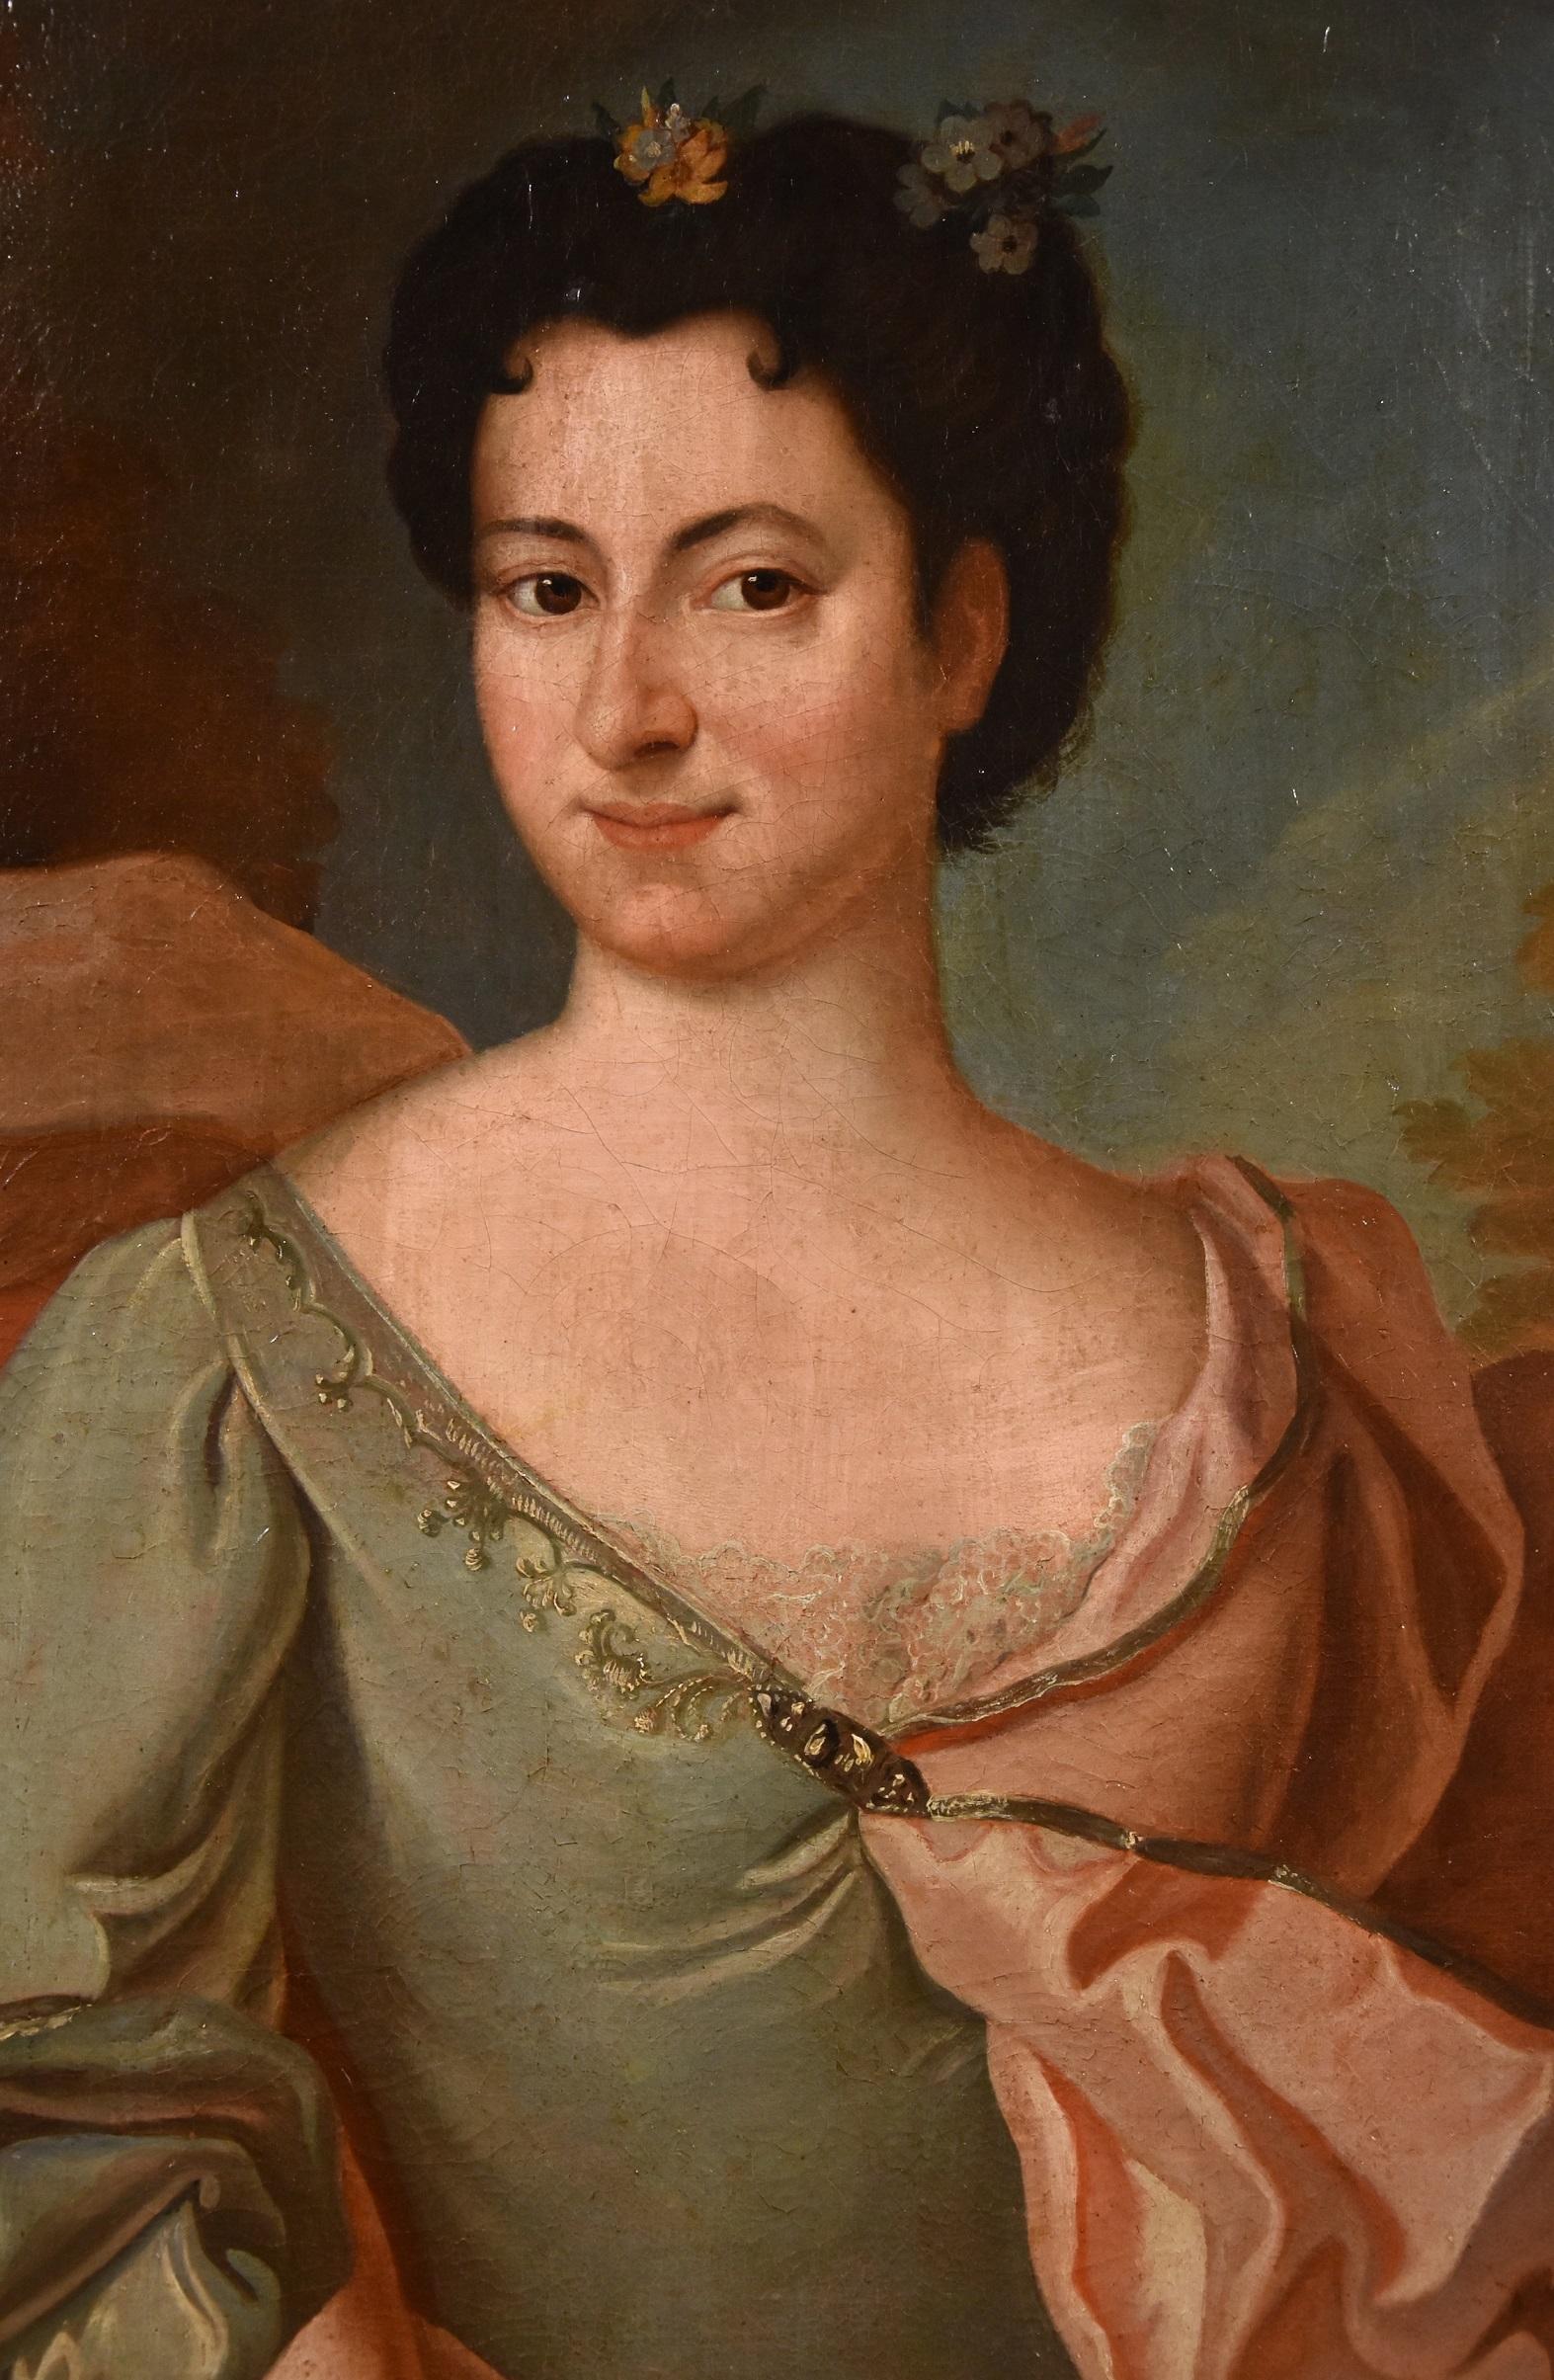 Portrait Lady De Troy Paint Oil on canvas Old master 18th Century French Madame - Brown Portrait Painting by François de Troy (Toulouse 1645 - Paris 1730)